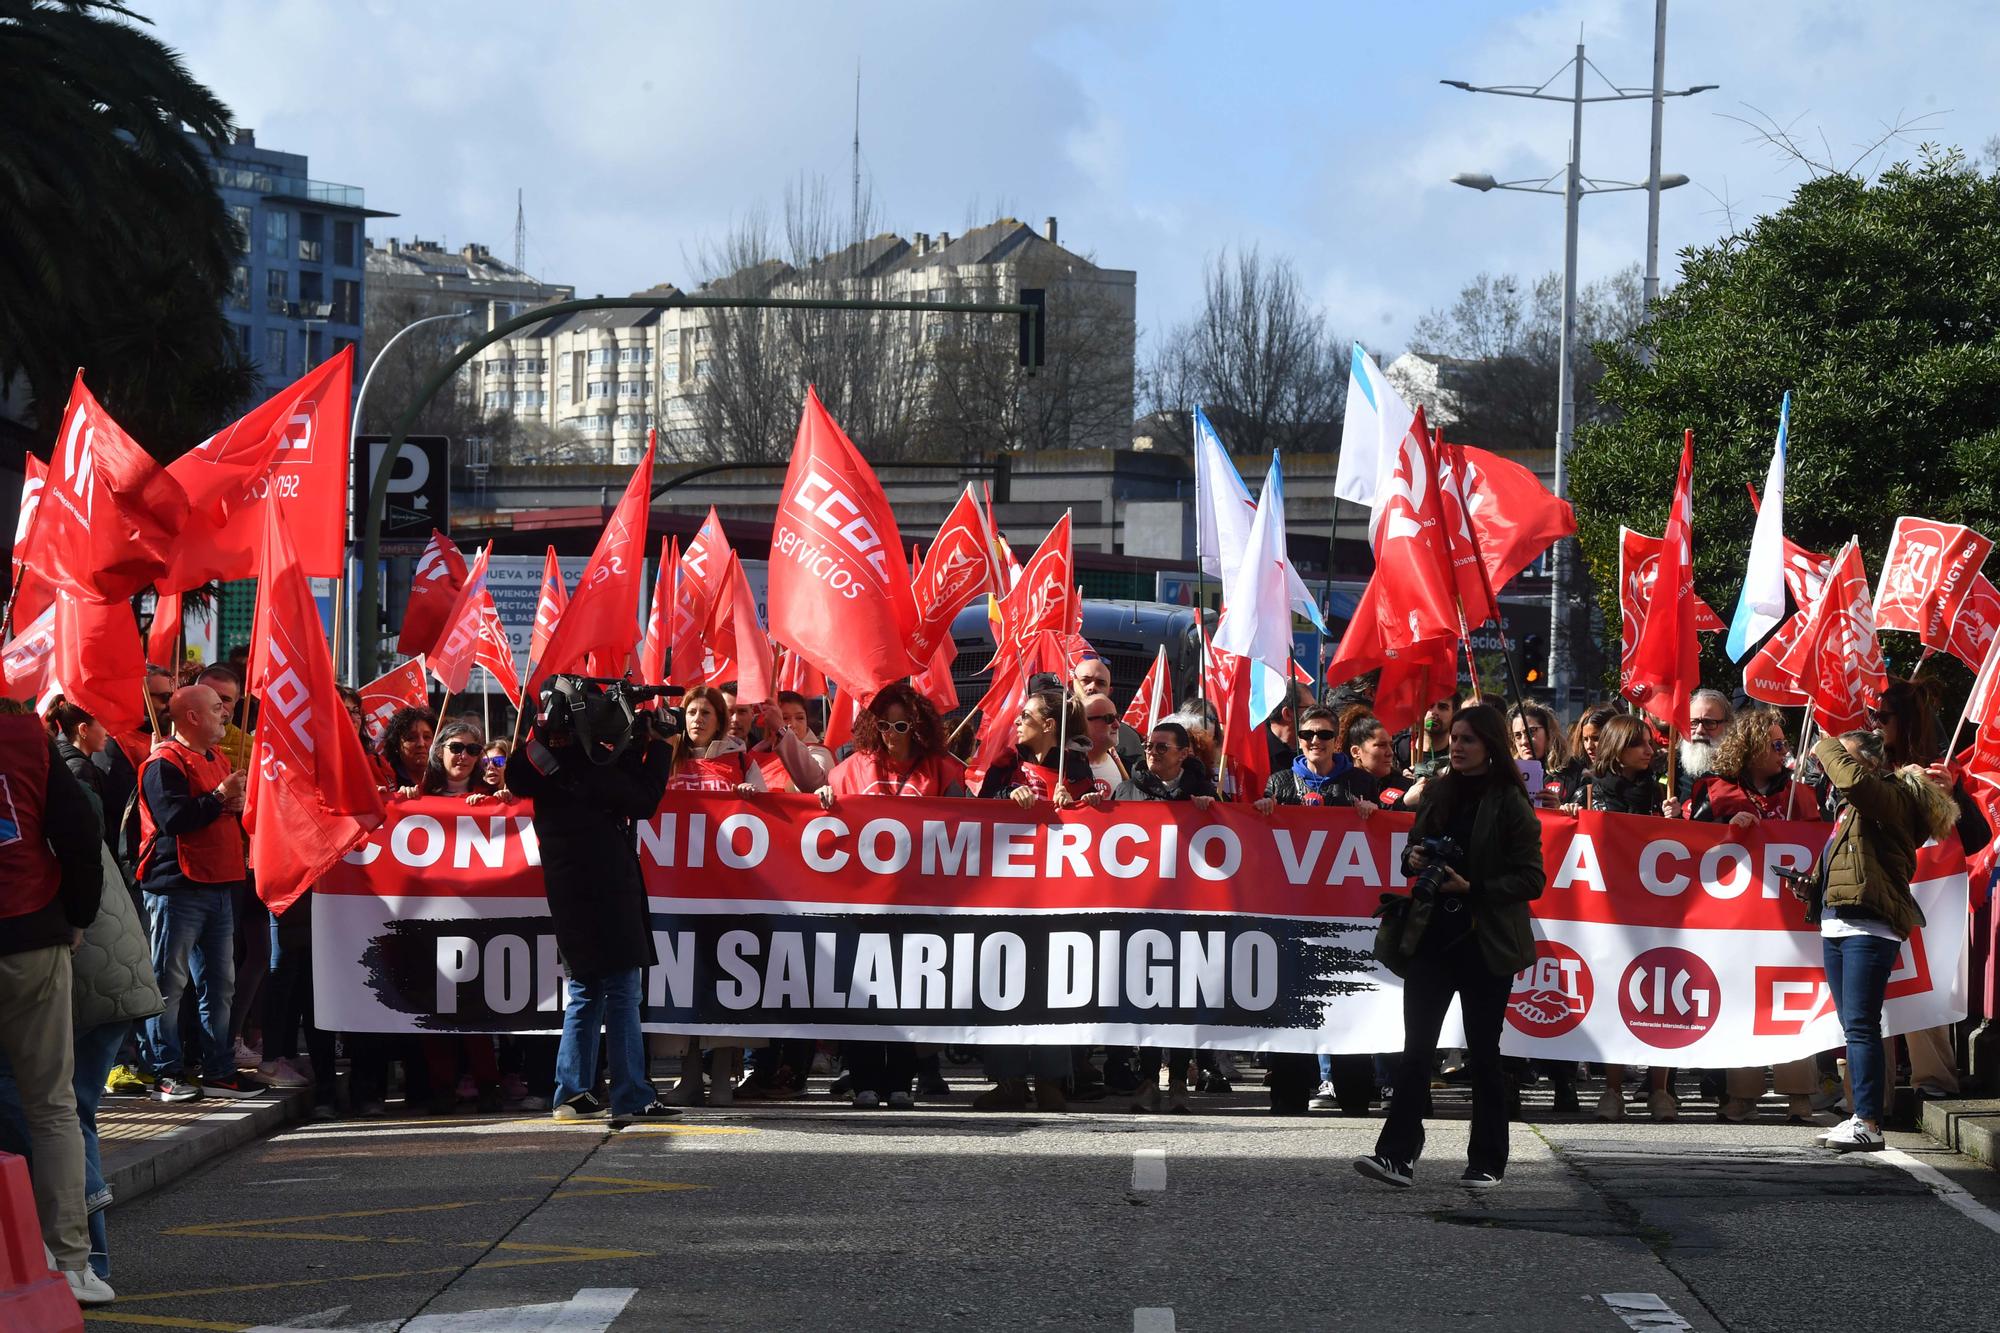 Manifestación de trabajadores del comercio en A Coruña